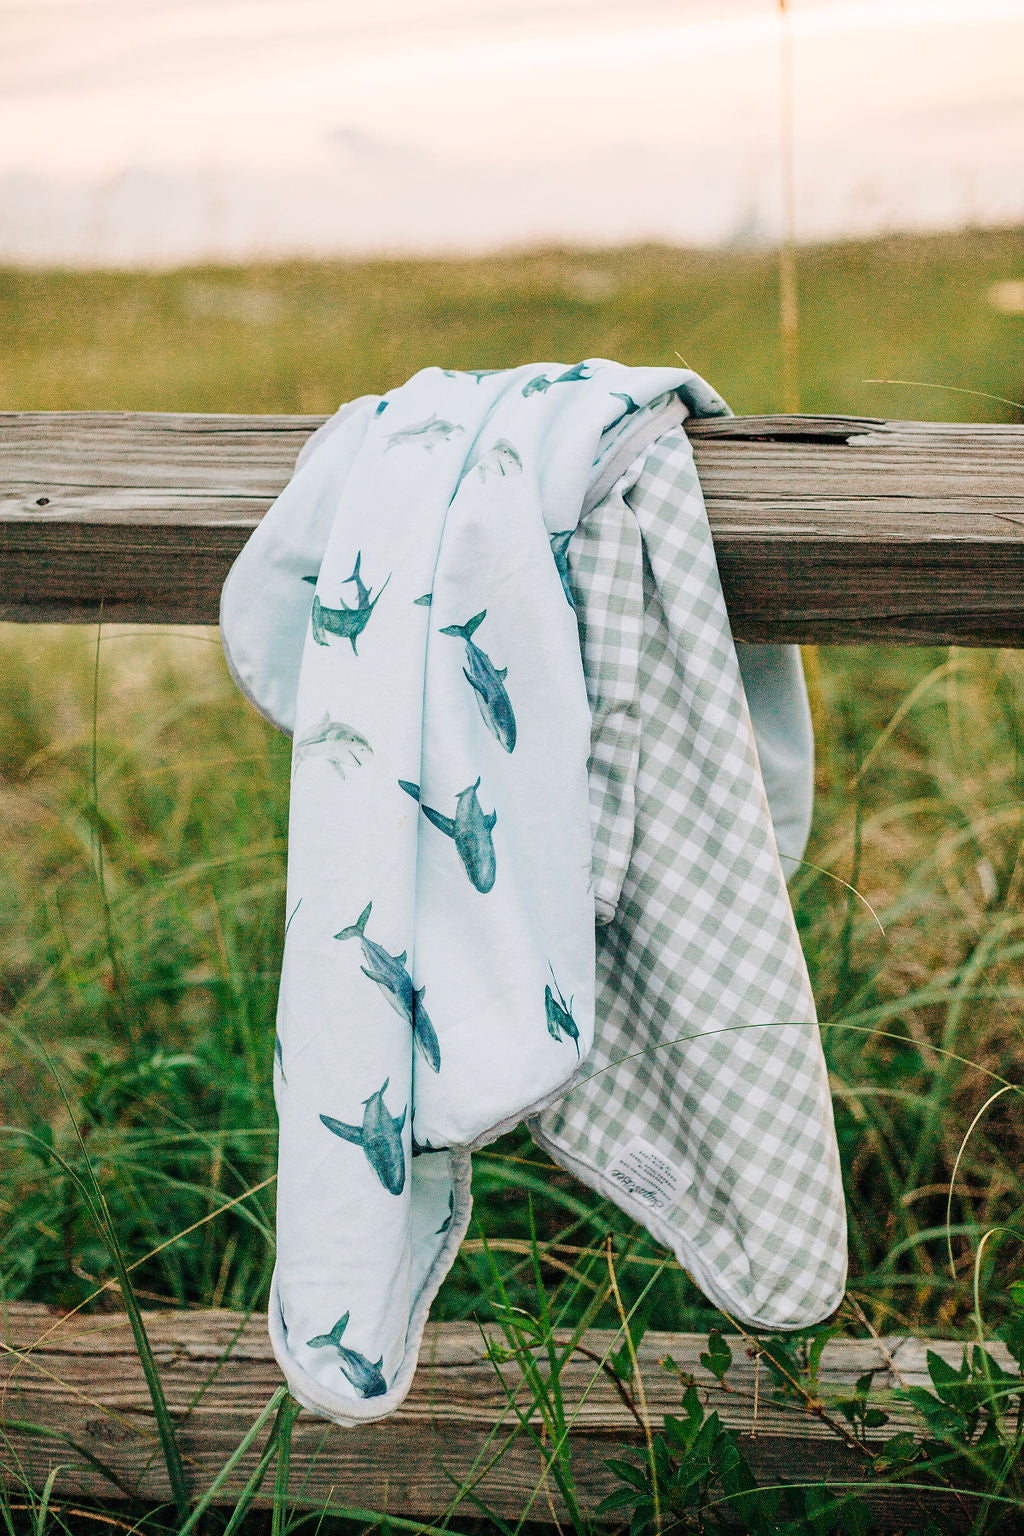 Swim Towel - Sharks